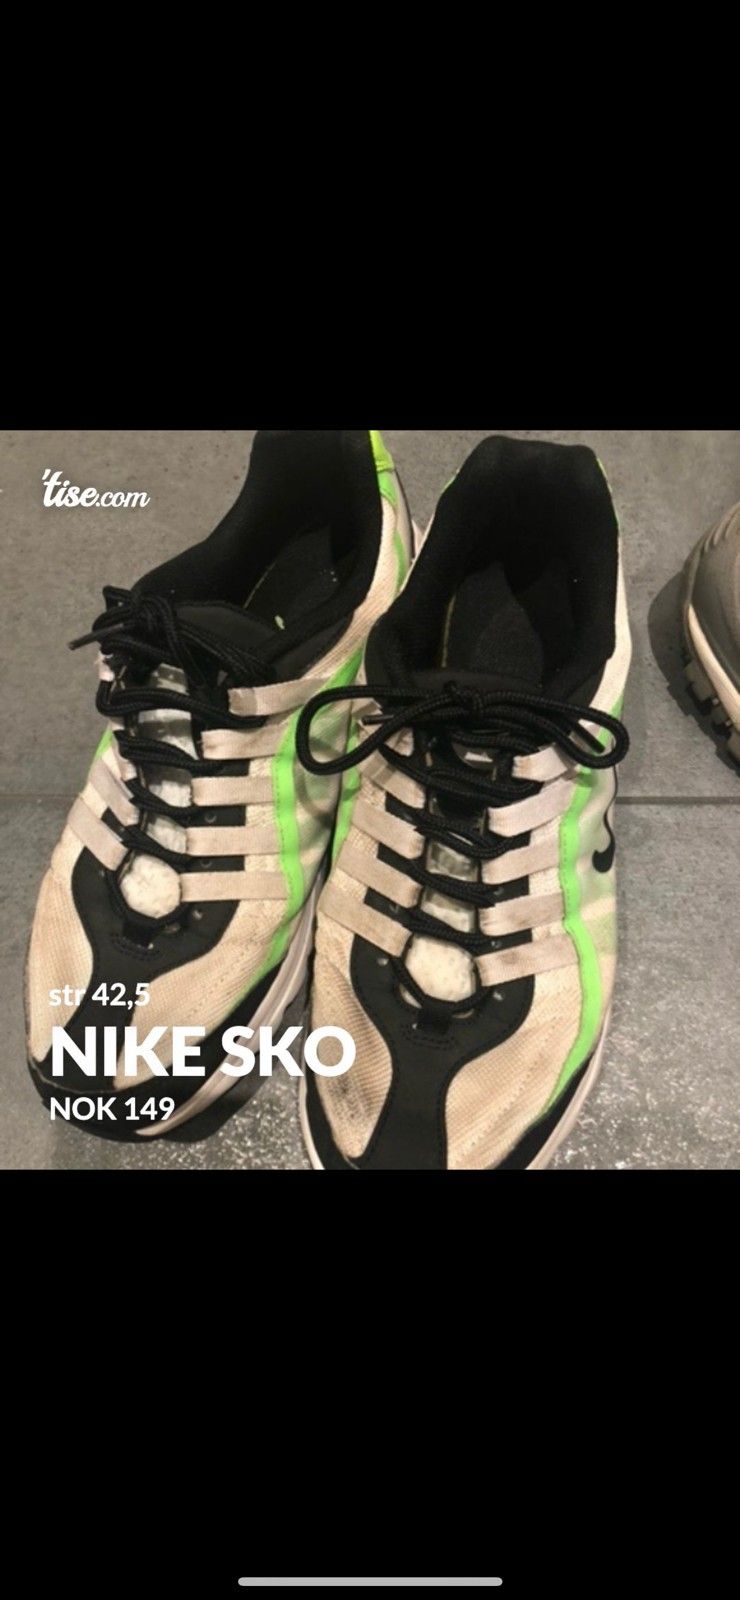 Nike sko | FINN torget